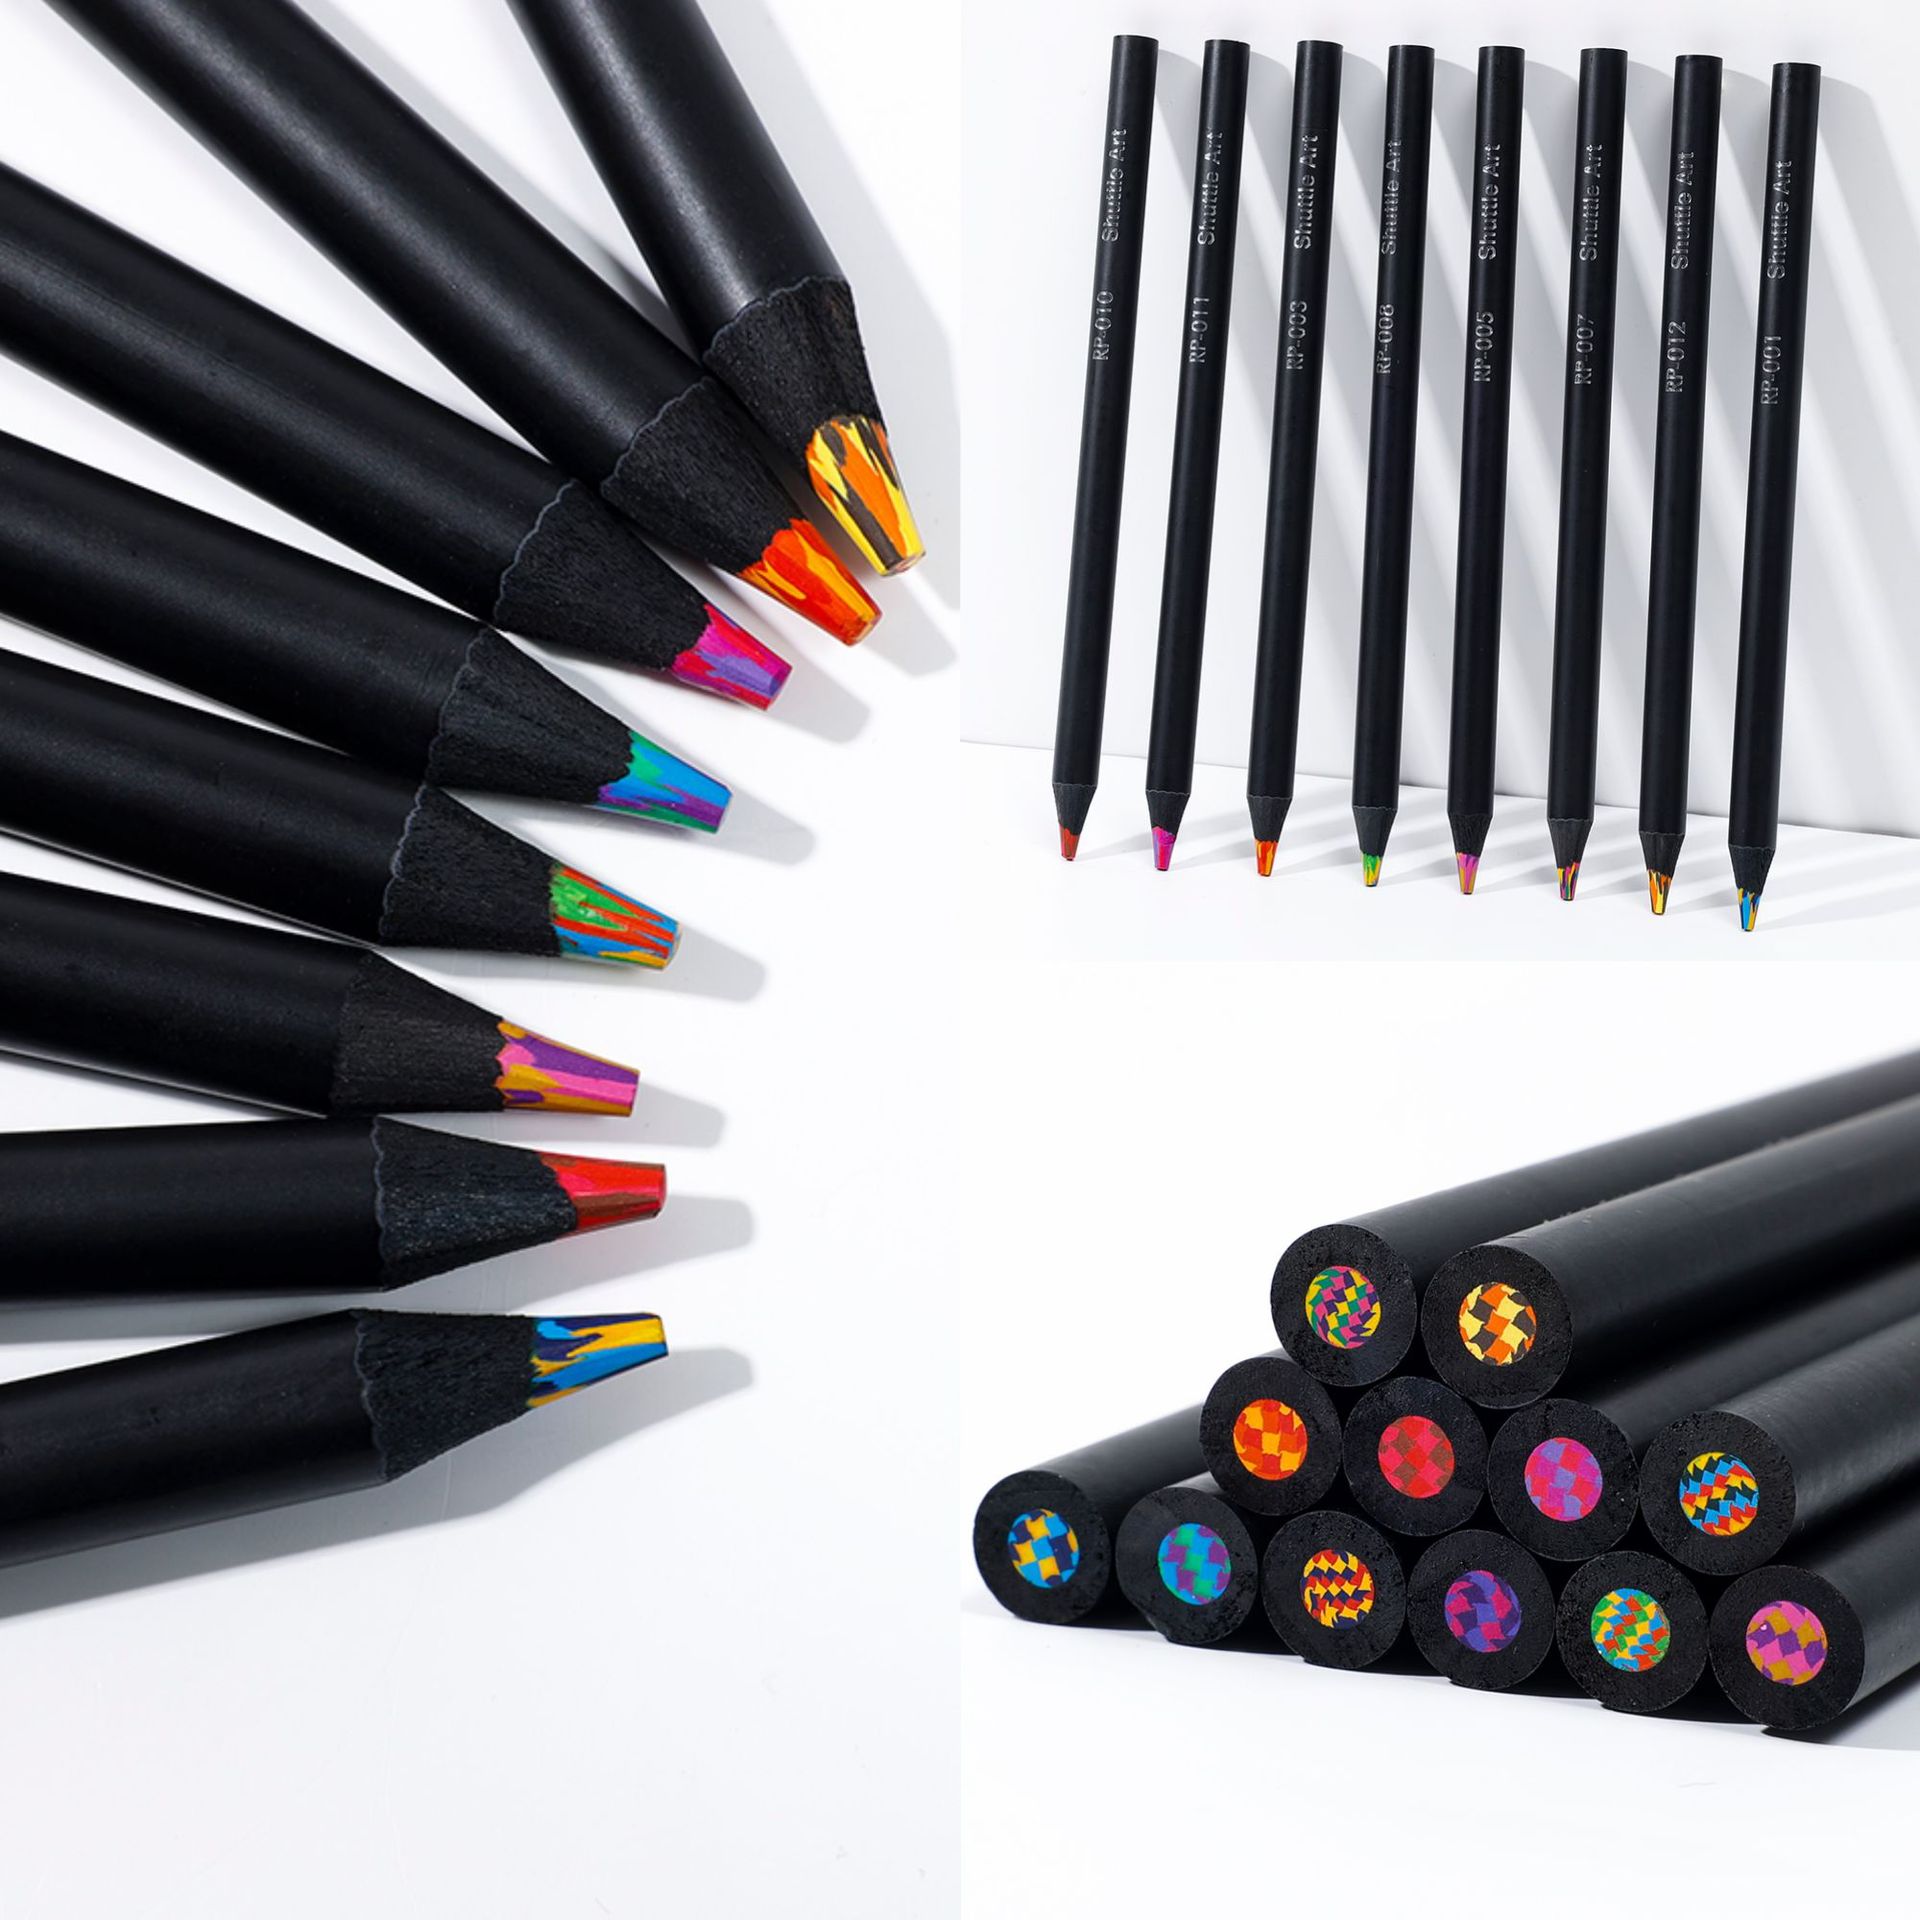 黑木12色彩虹铅笔粗杆木制满天星彩铅穿梭笔芯儿童绘画涂鸦彩虹笔